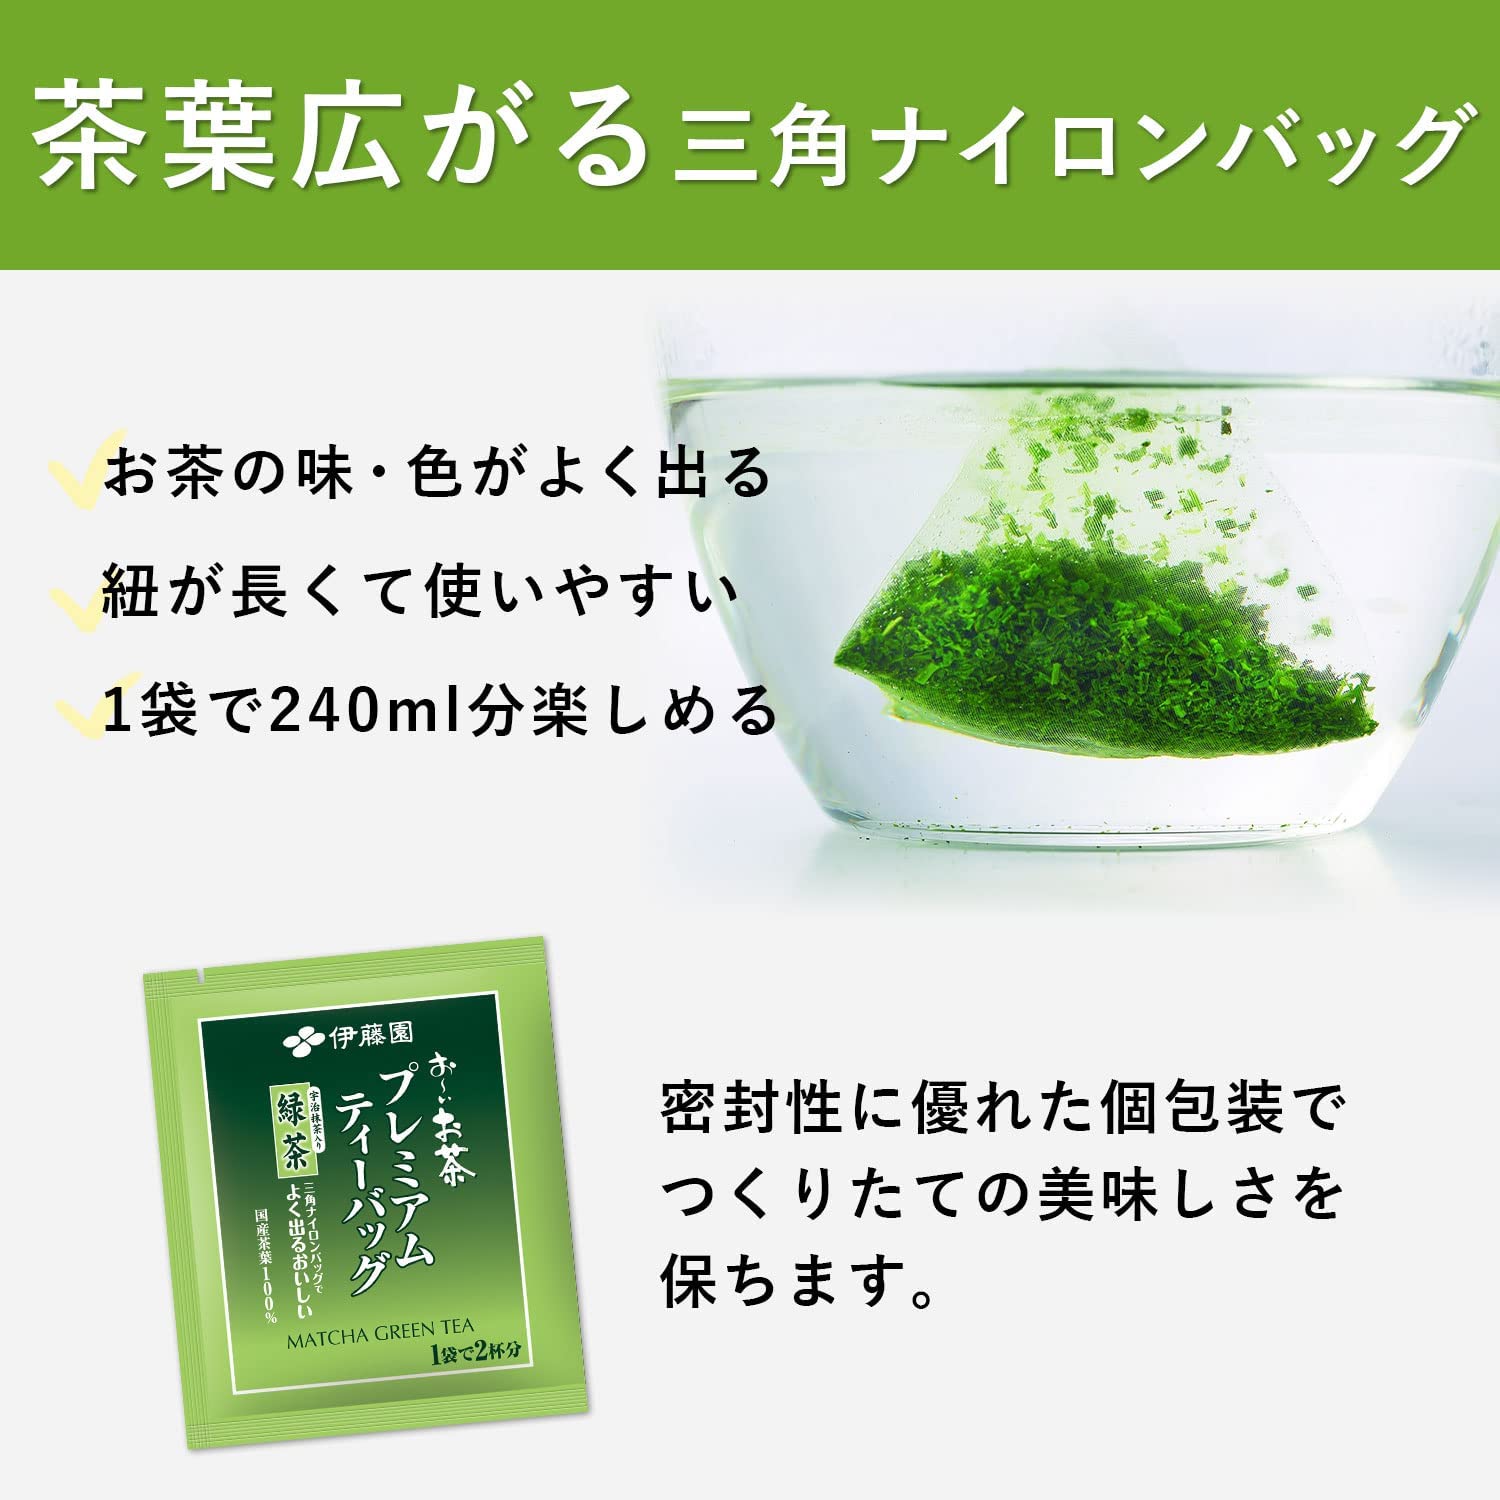 ITOEN Matcha Greentea Pack อิโตเอ็นชาเขียวมัทฉะแบบซองพร้อมดื่ม 50ซอง/กล่อง(18กรัม)